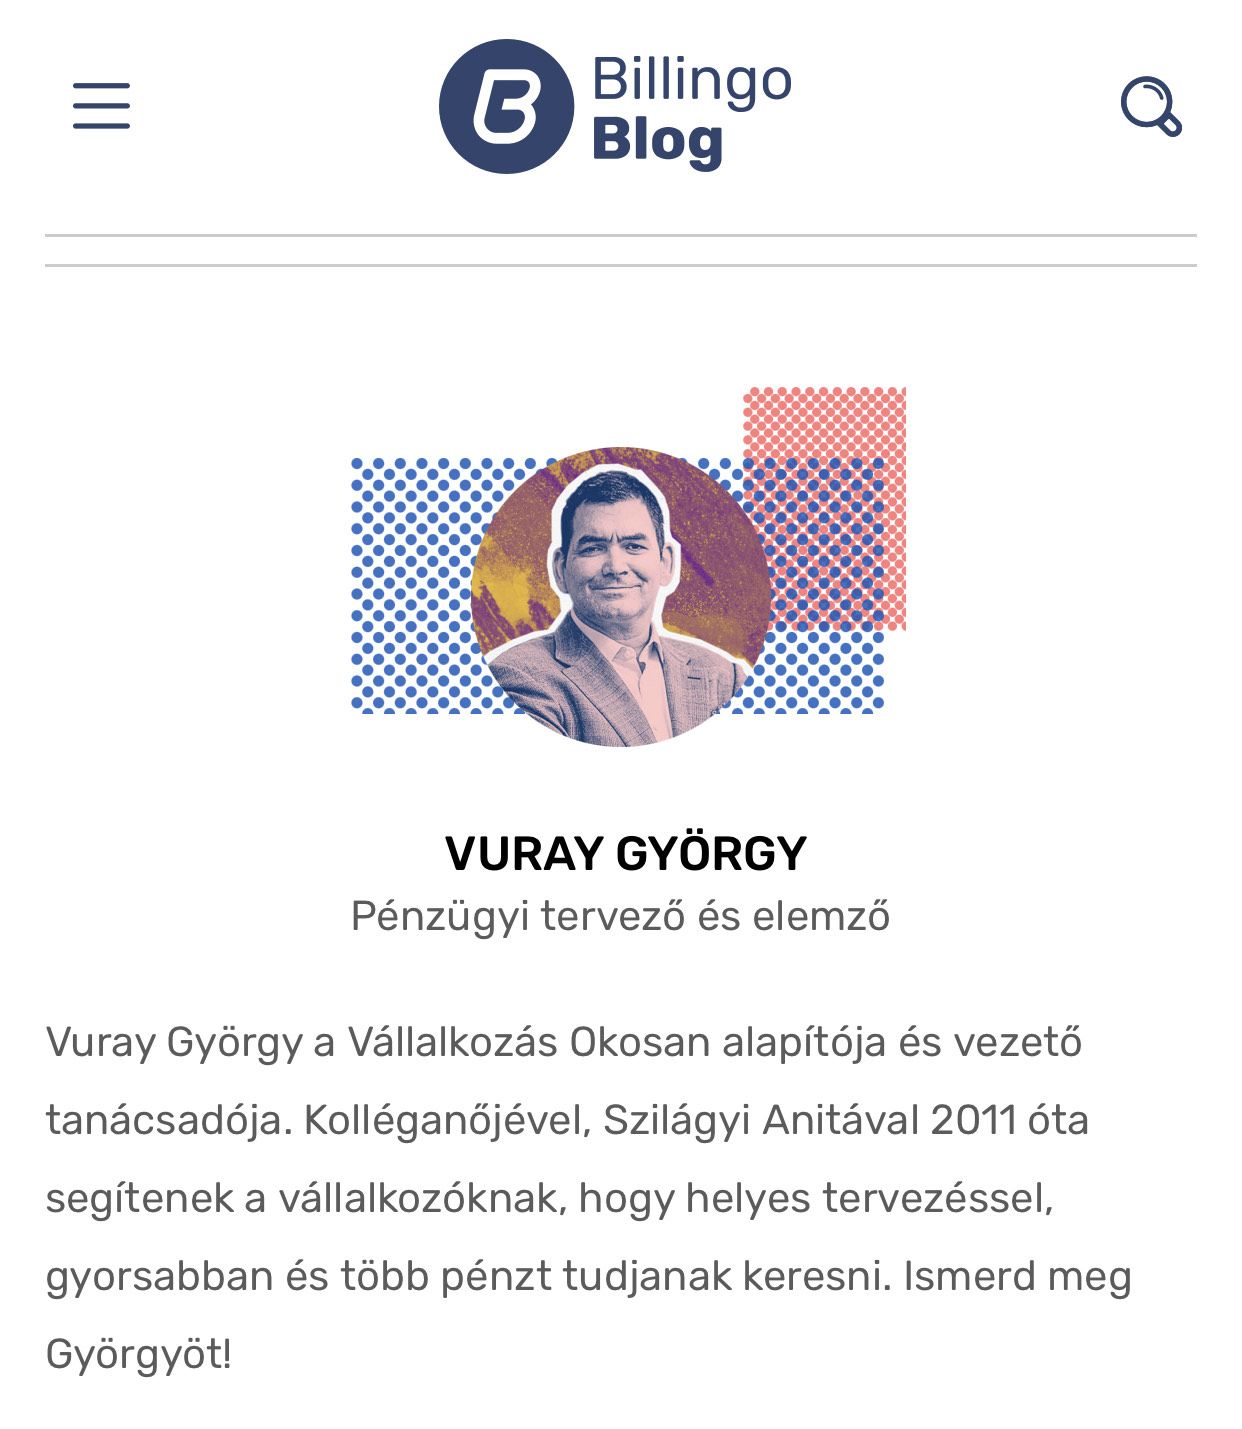 Vuray György - Billingo